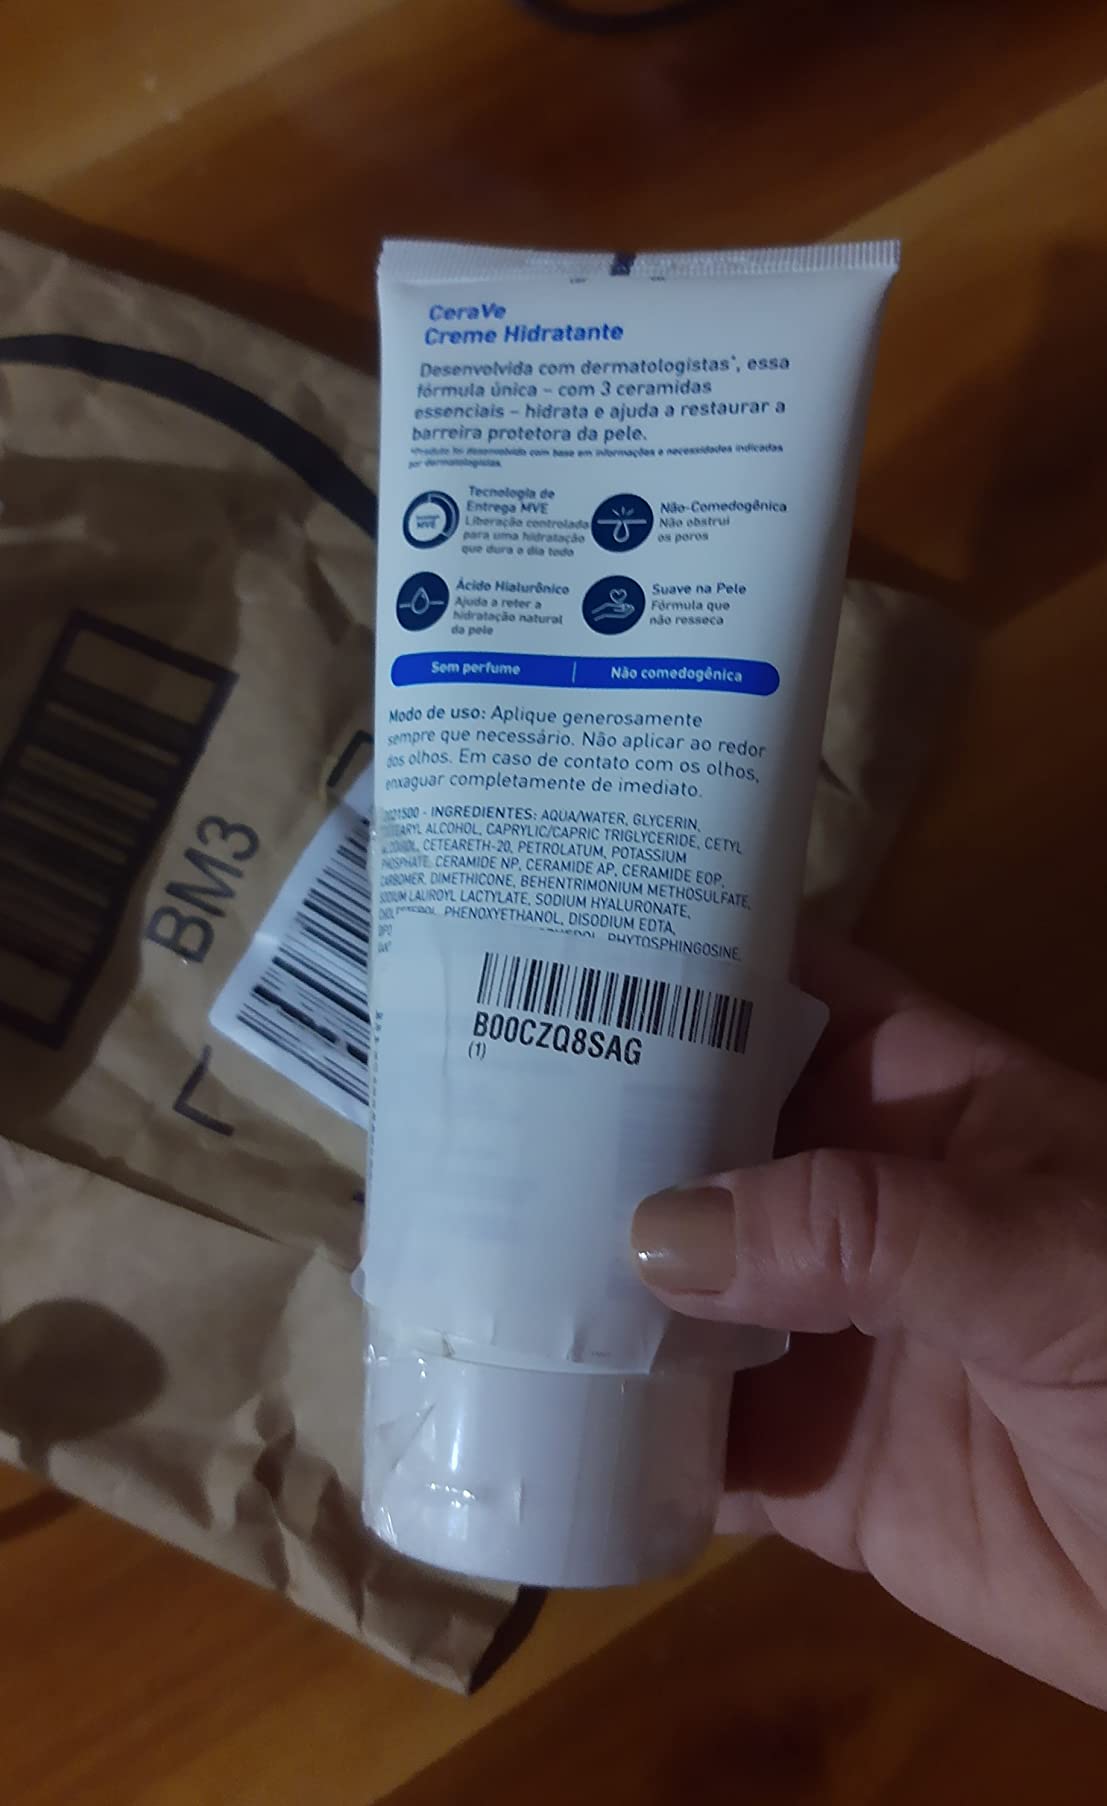 CeraVe Creme Hidratante com Ácido Hialurônico - Imagem do produto que o cliente comprou